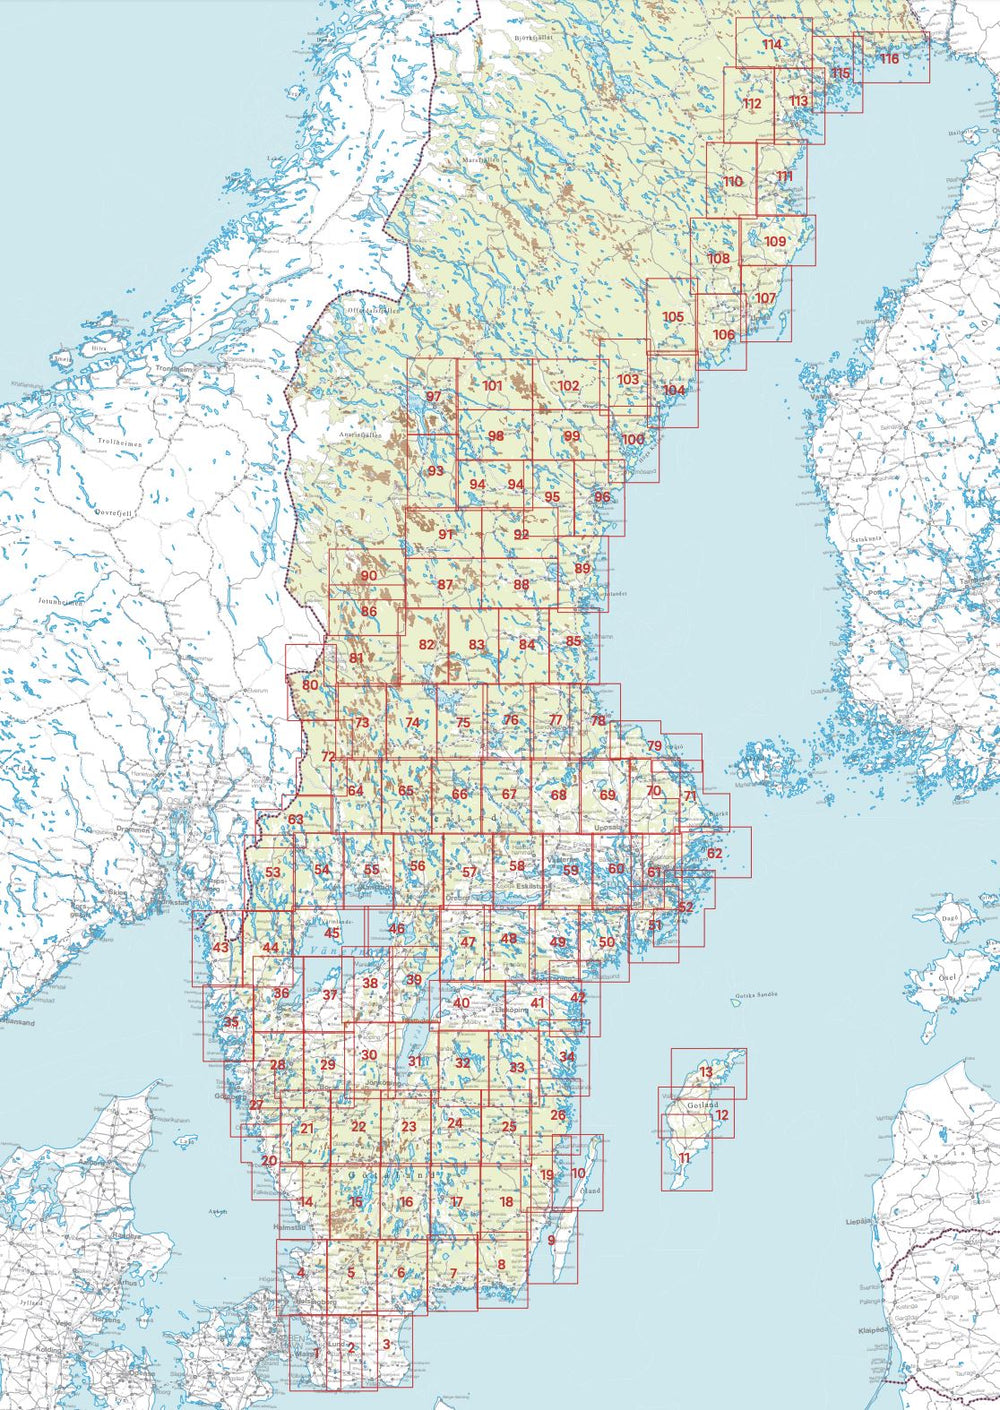 Carte topographique n° 93 - Åsarna (Suède) | Norstedts - Sverigeserien carte pliée Norstedts 